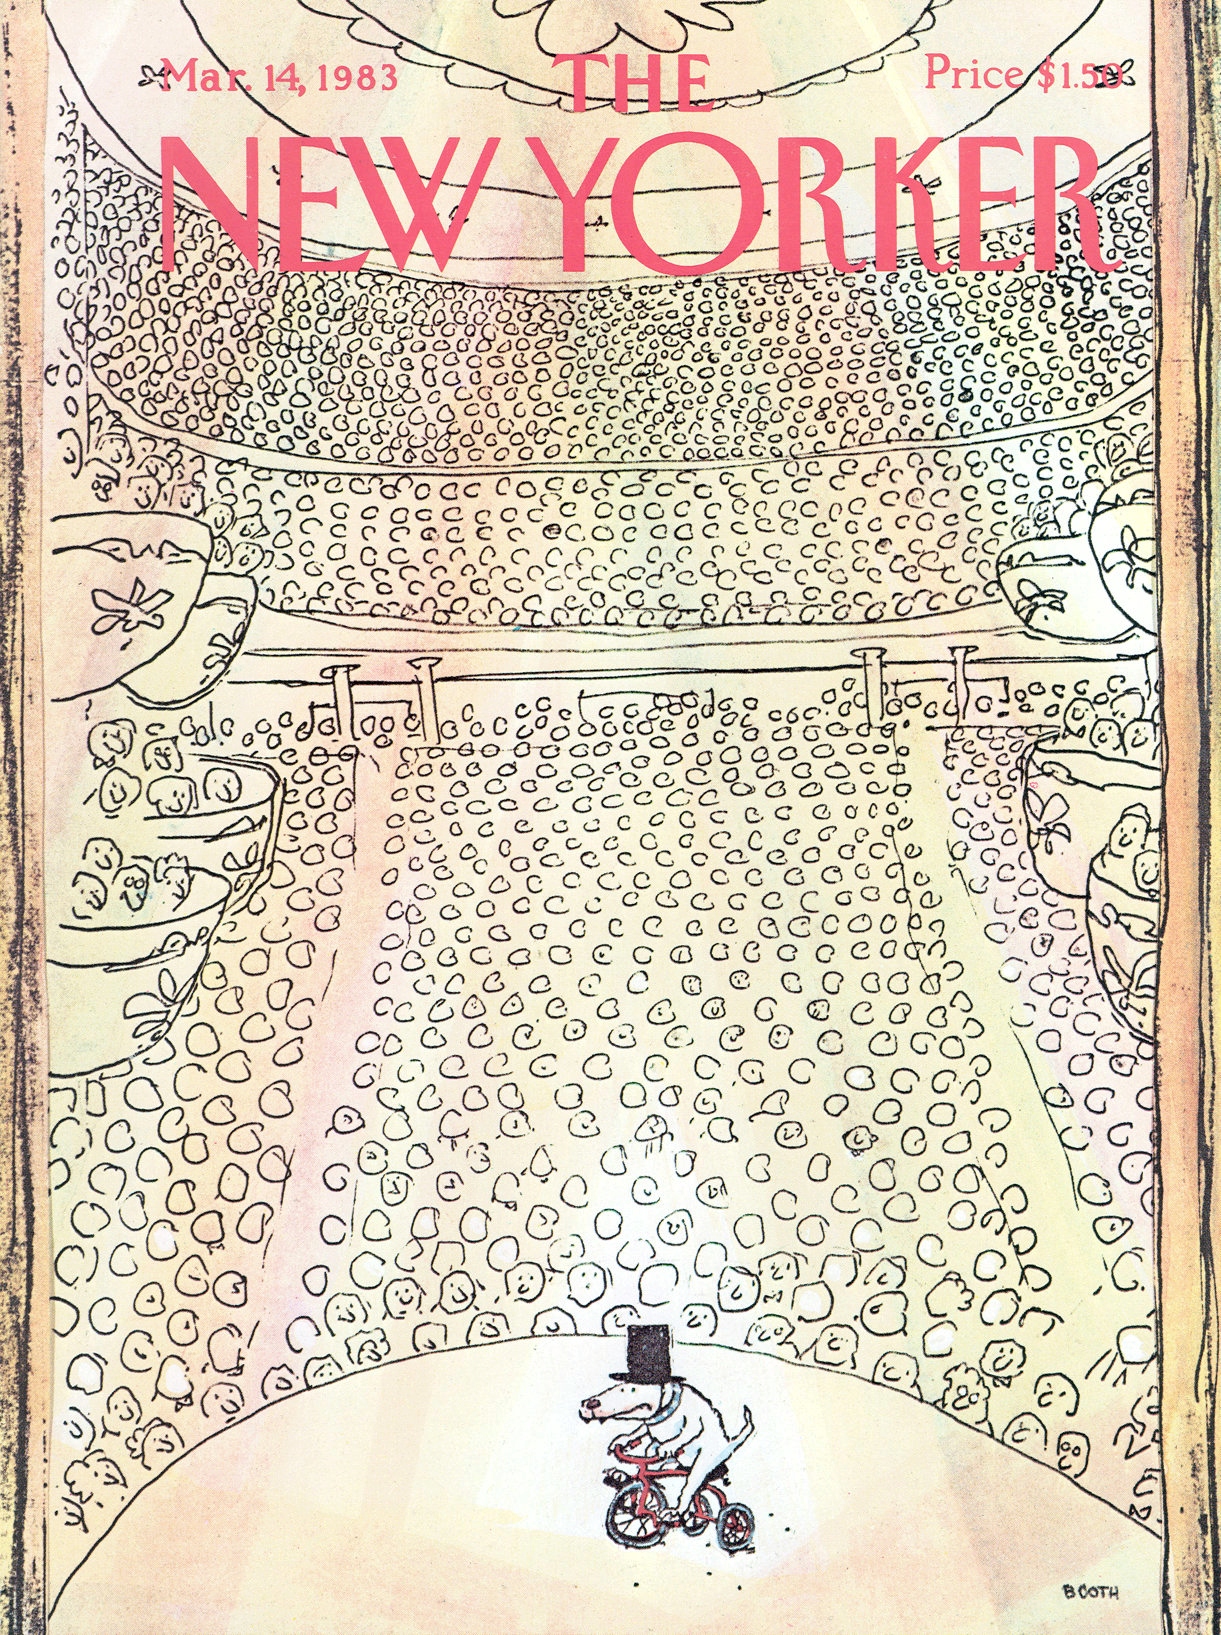 Portada de marzo de 1983 para the New Yorker por el dibujante de humor visual George Booth